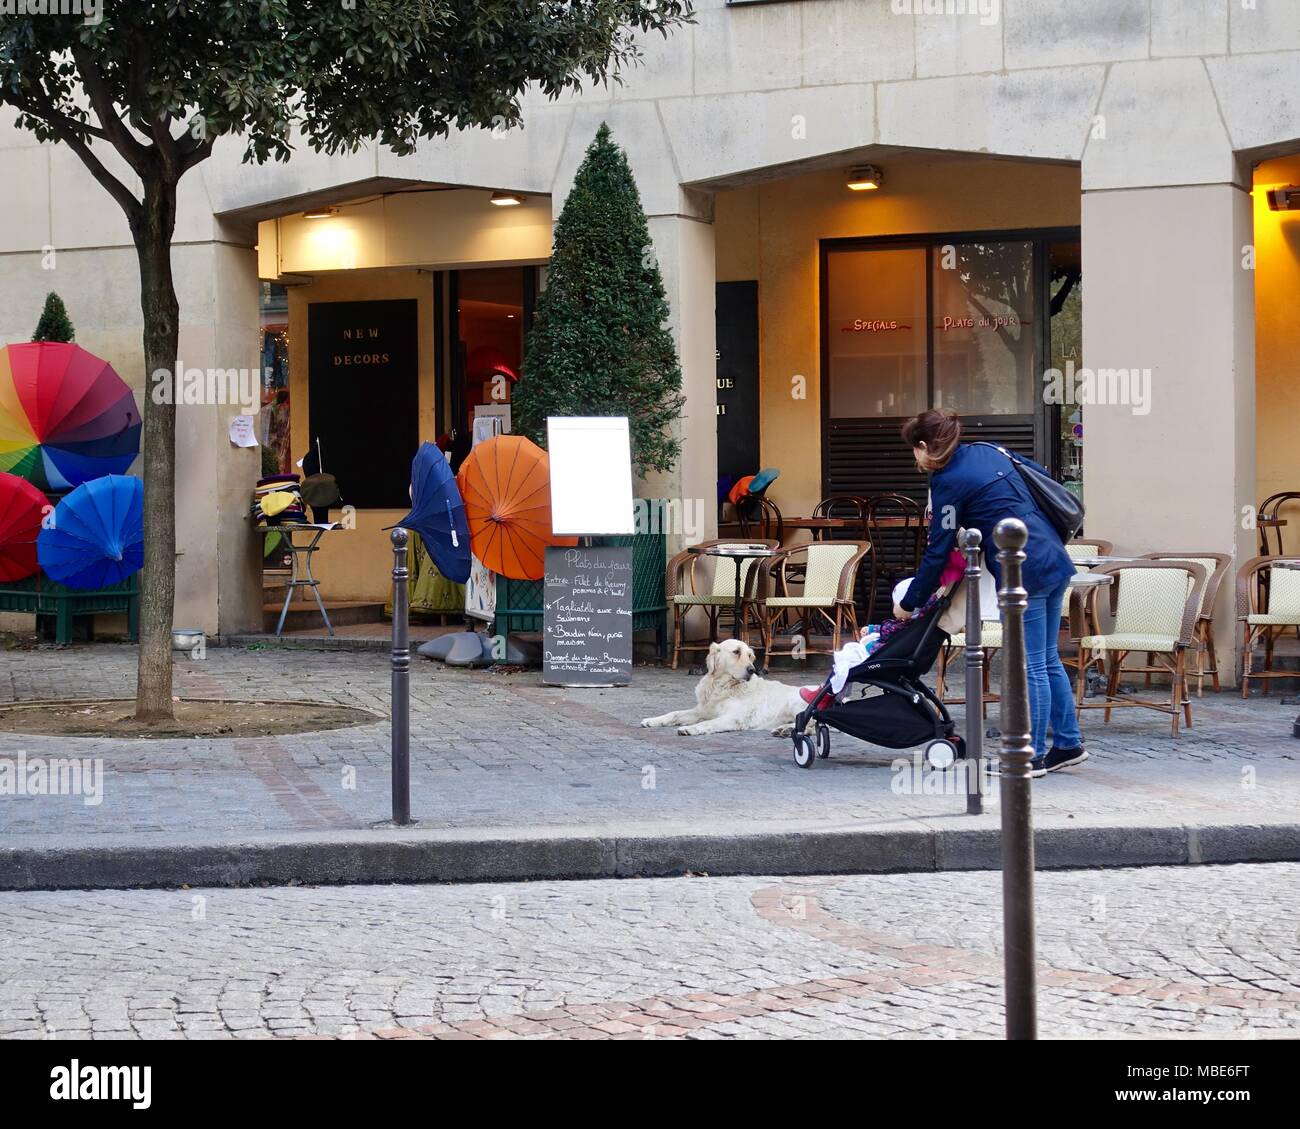 Mutter und Kind im Kinderwagen, stoppen Sie einen süßen Hund vor einem Cafe zu bewundern, die noch nicht für den Tag für Sie geöffnet. Paris, Frankreich. Stockfoto